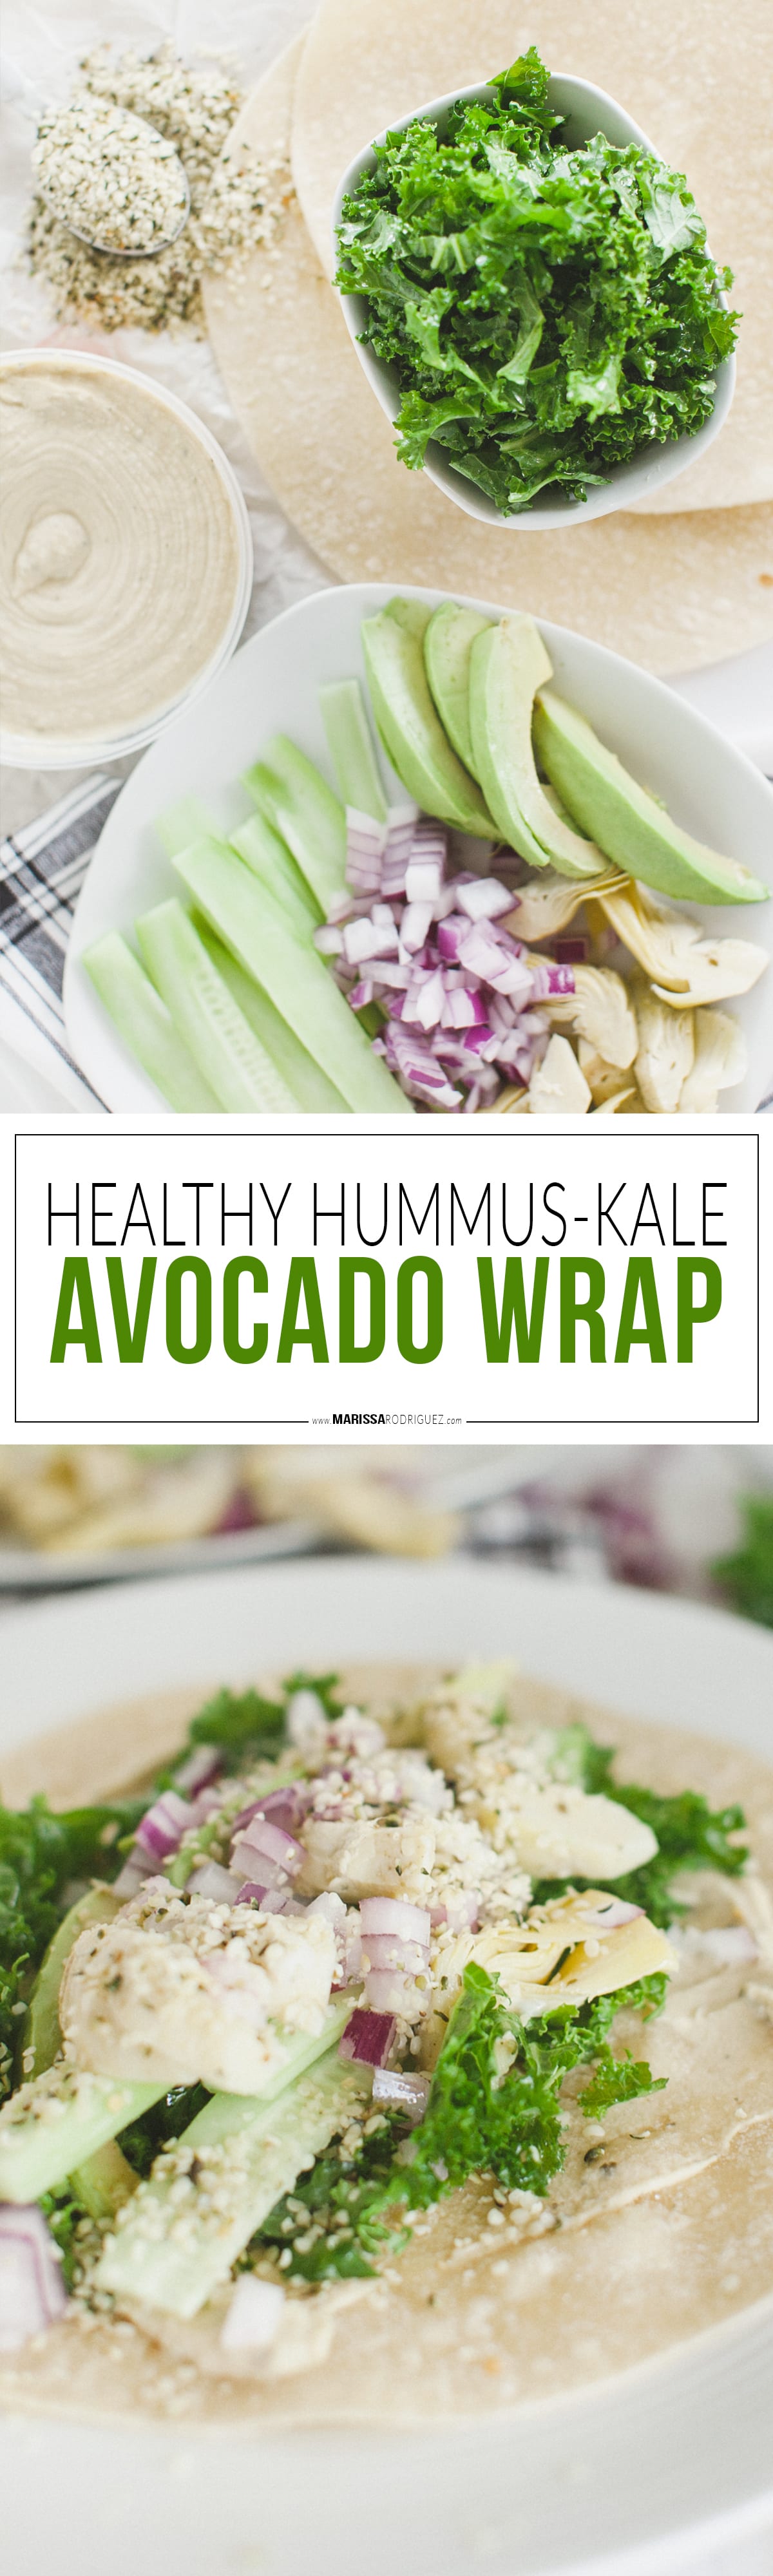 healthy hummus & kale avocado wrap